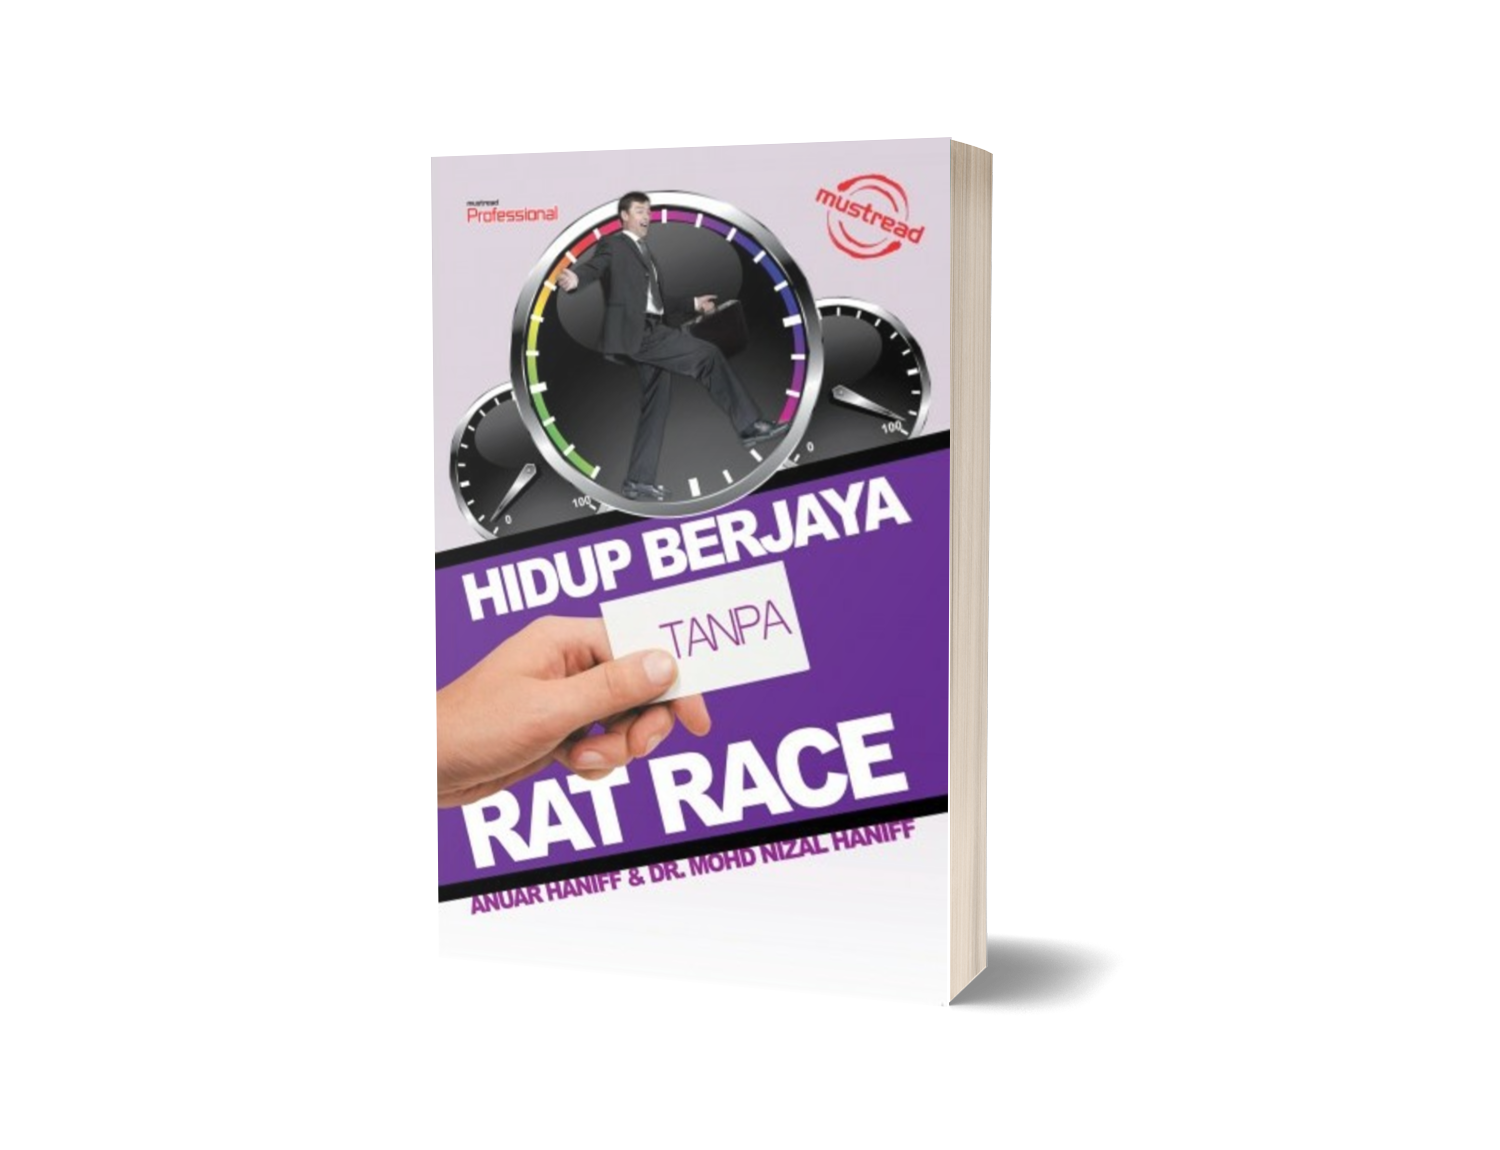 HIDUP BERJAYA TANPA RAT RACE